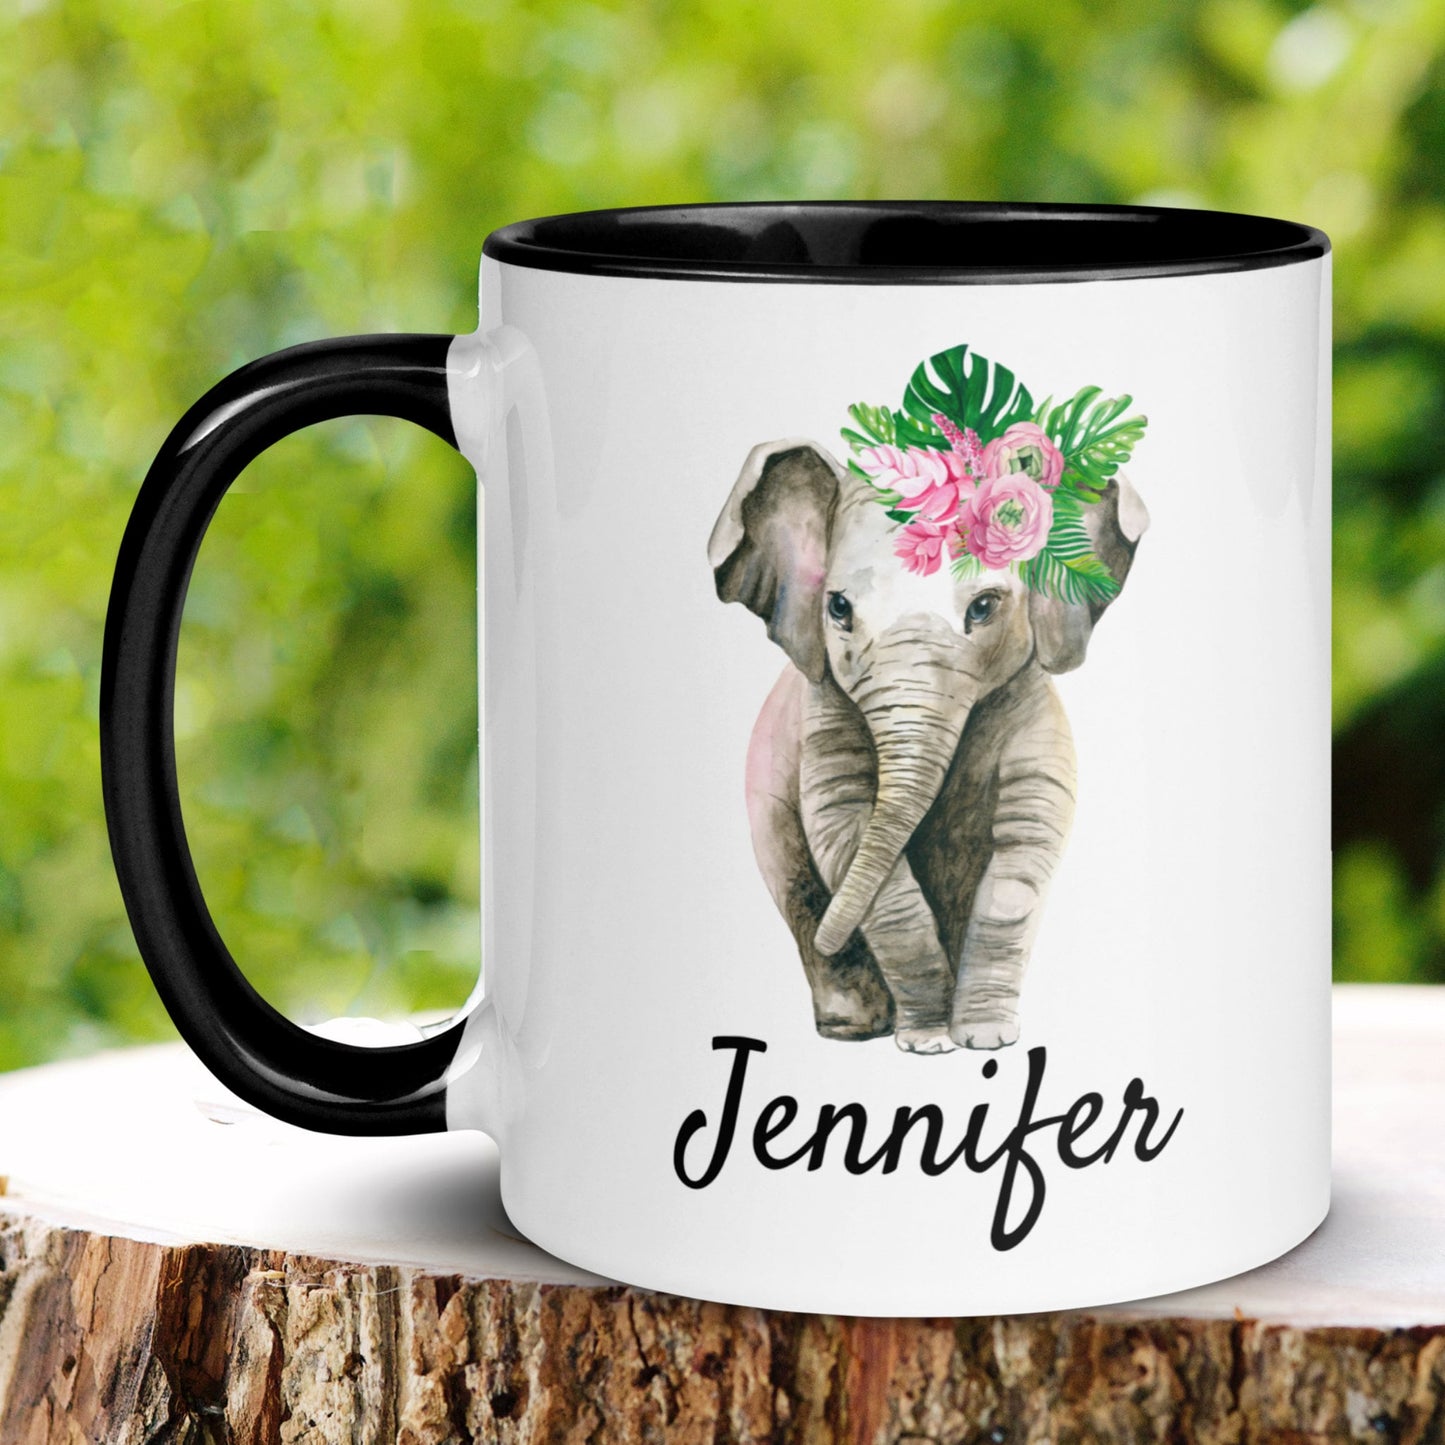 Elephant Gifts, Elephant Mug - Zehnaria - PETS & ANIMALS - Mugs